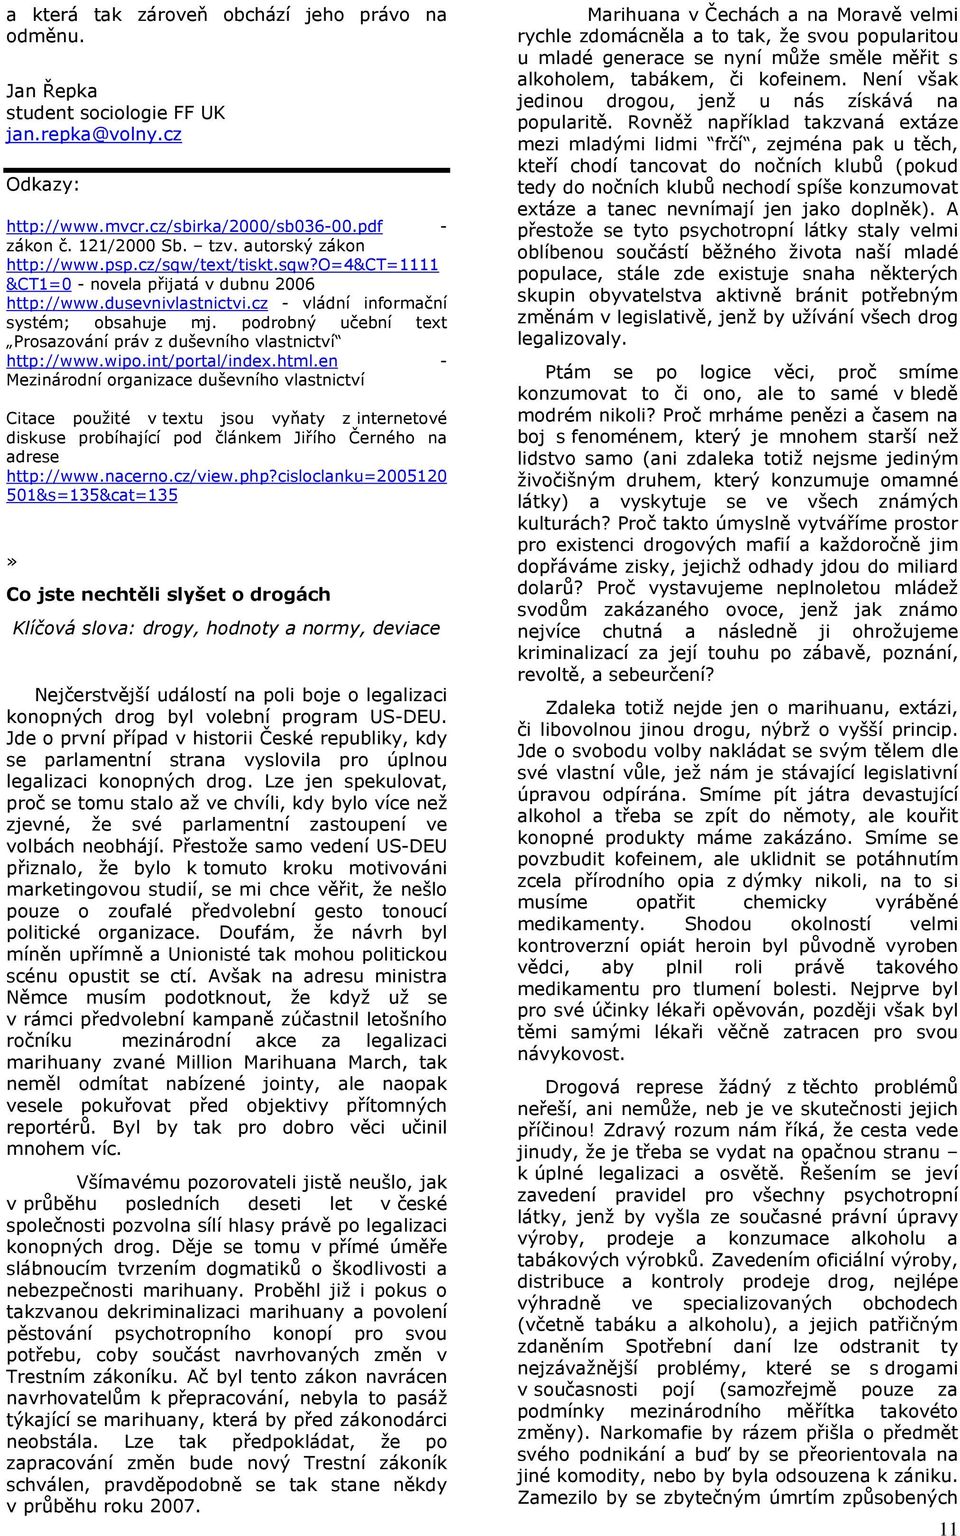 podrobný učební text Prosazování práv z duševního vlastnictví http://www.wipo.int/portal/index.html.